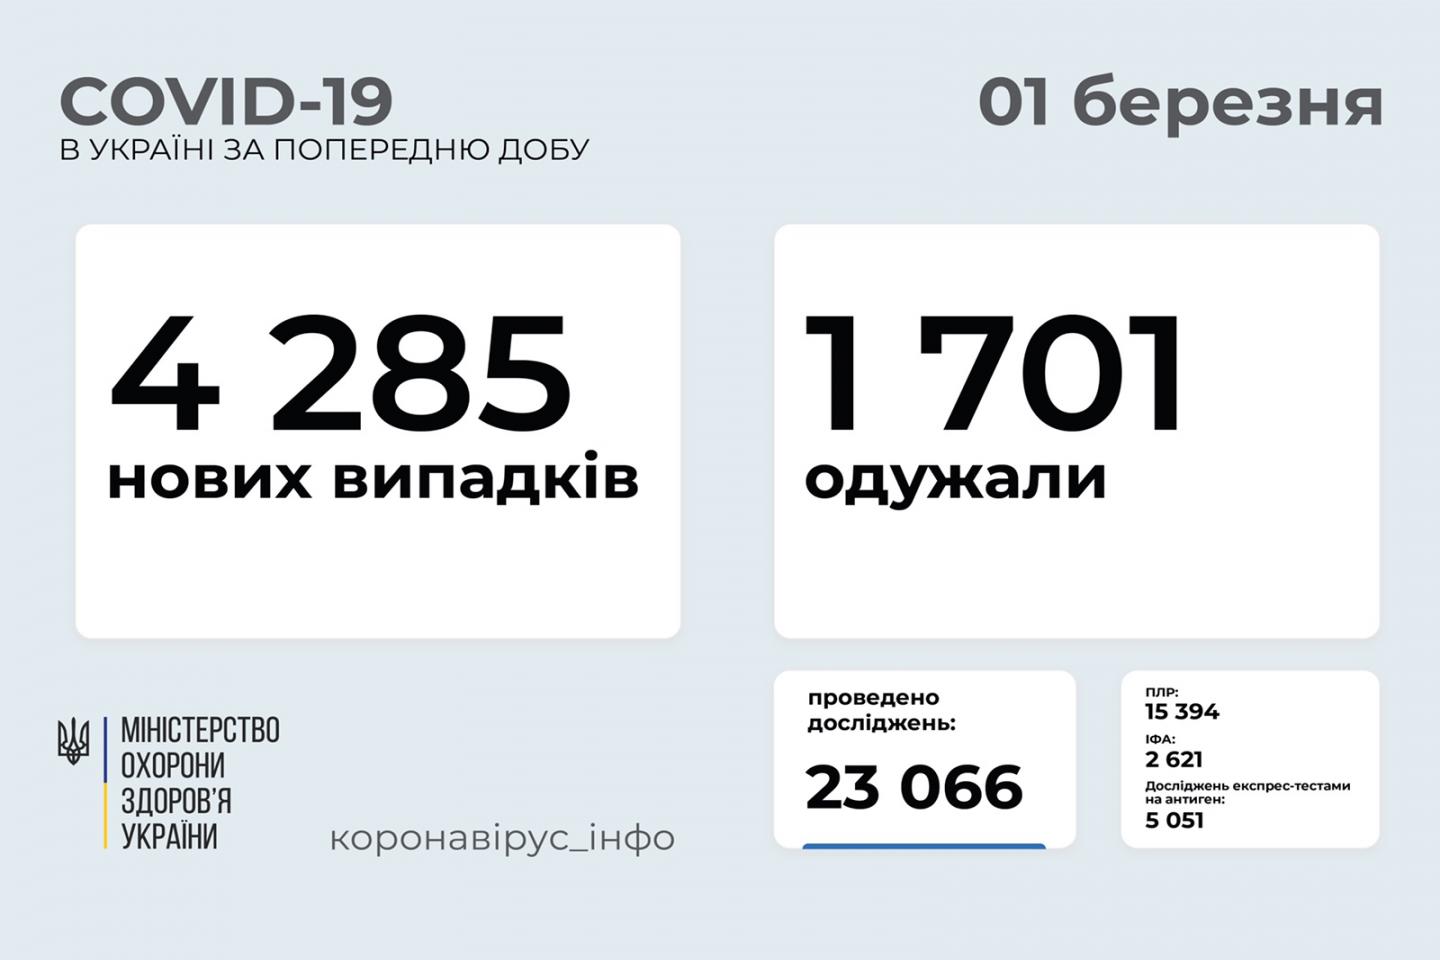 http://dunrada.gov.ua/uploadfile/archive_news/2021/03/01/2021-03-01_8323/images/images-83073.jpg